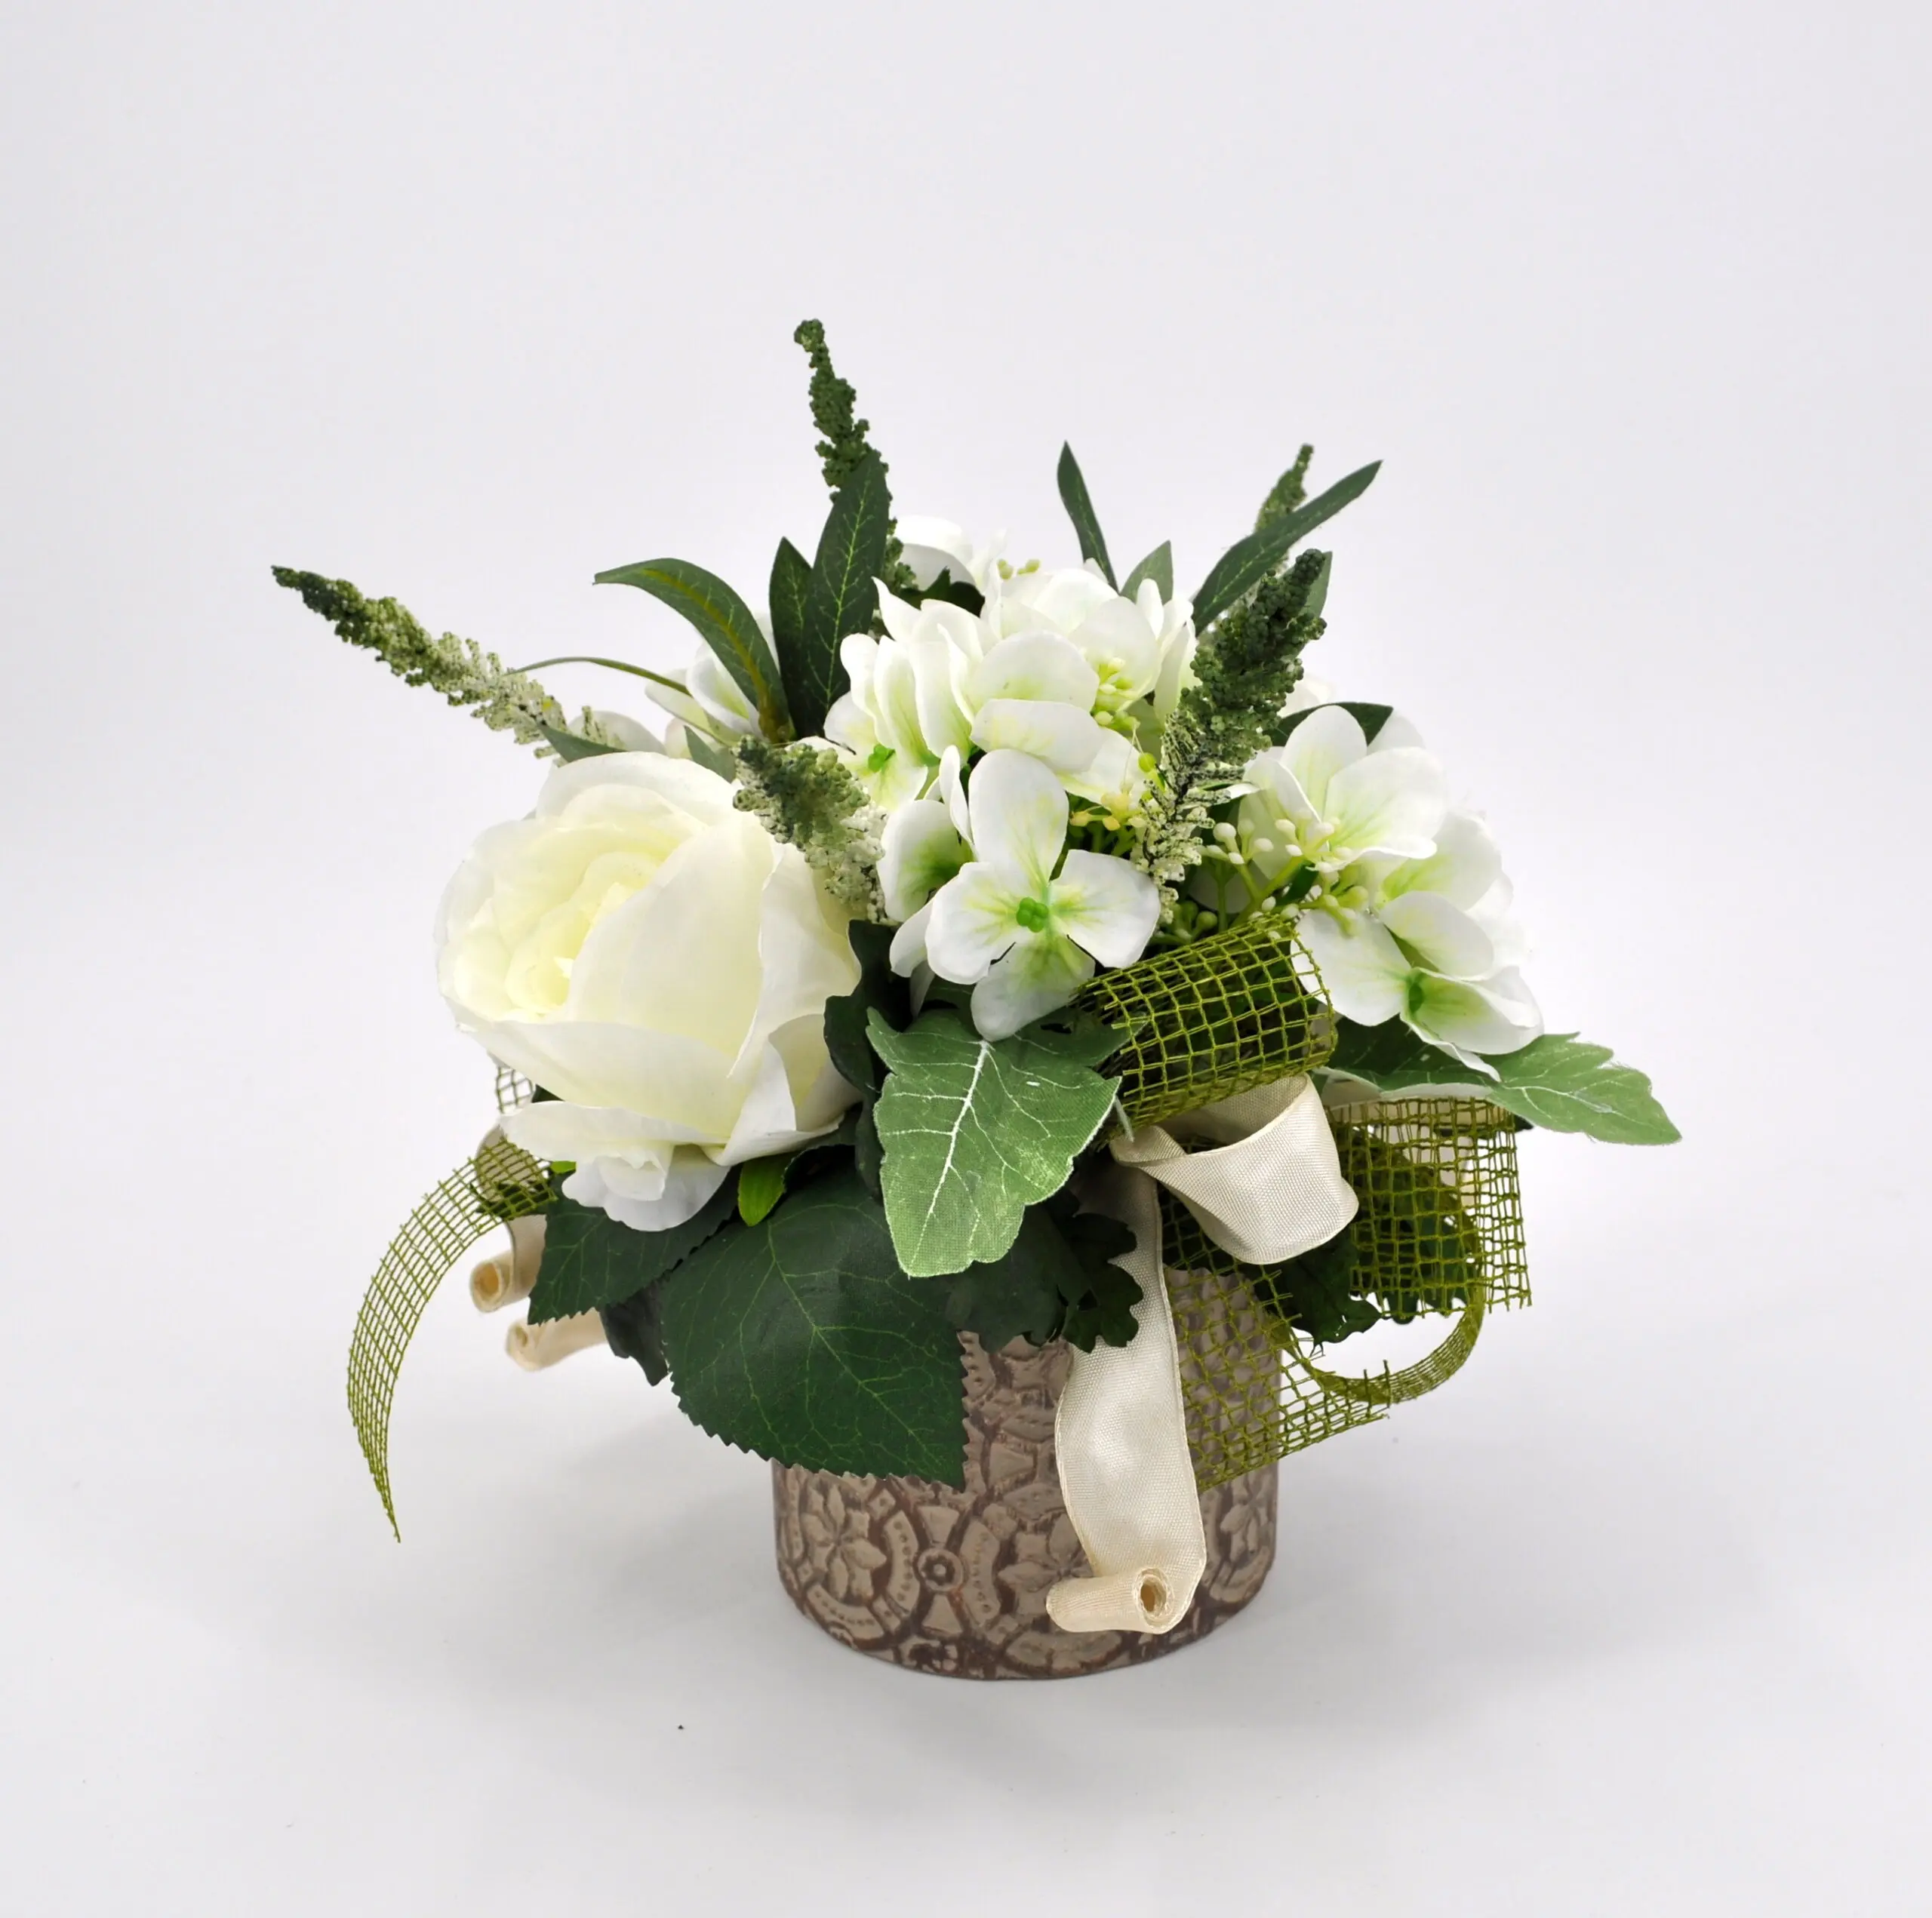 composizioni fiori finti - Come disporre i fiori recisi nei vasi al cimitero